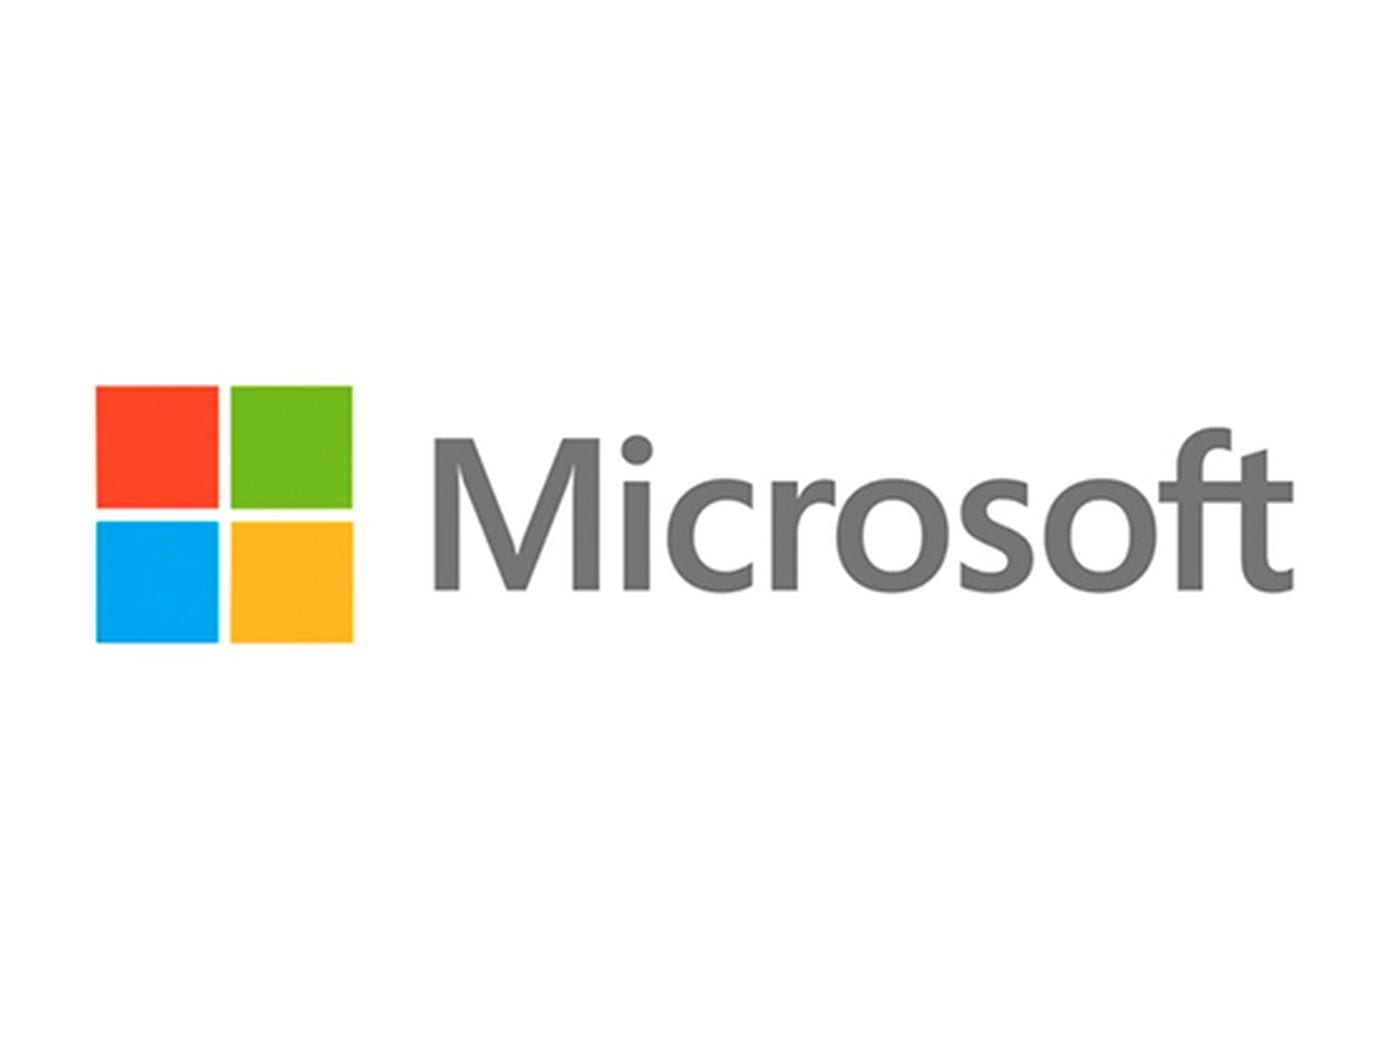 30 aziende si coalizzano contro Microsoft per "fermare" la competizione sleale